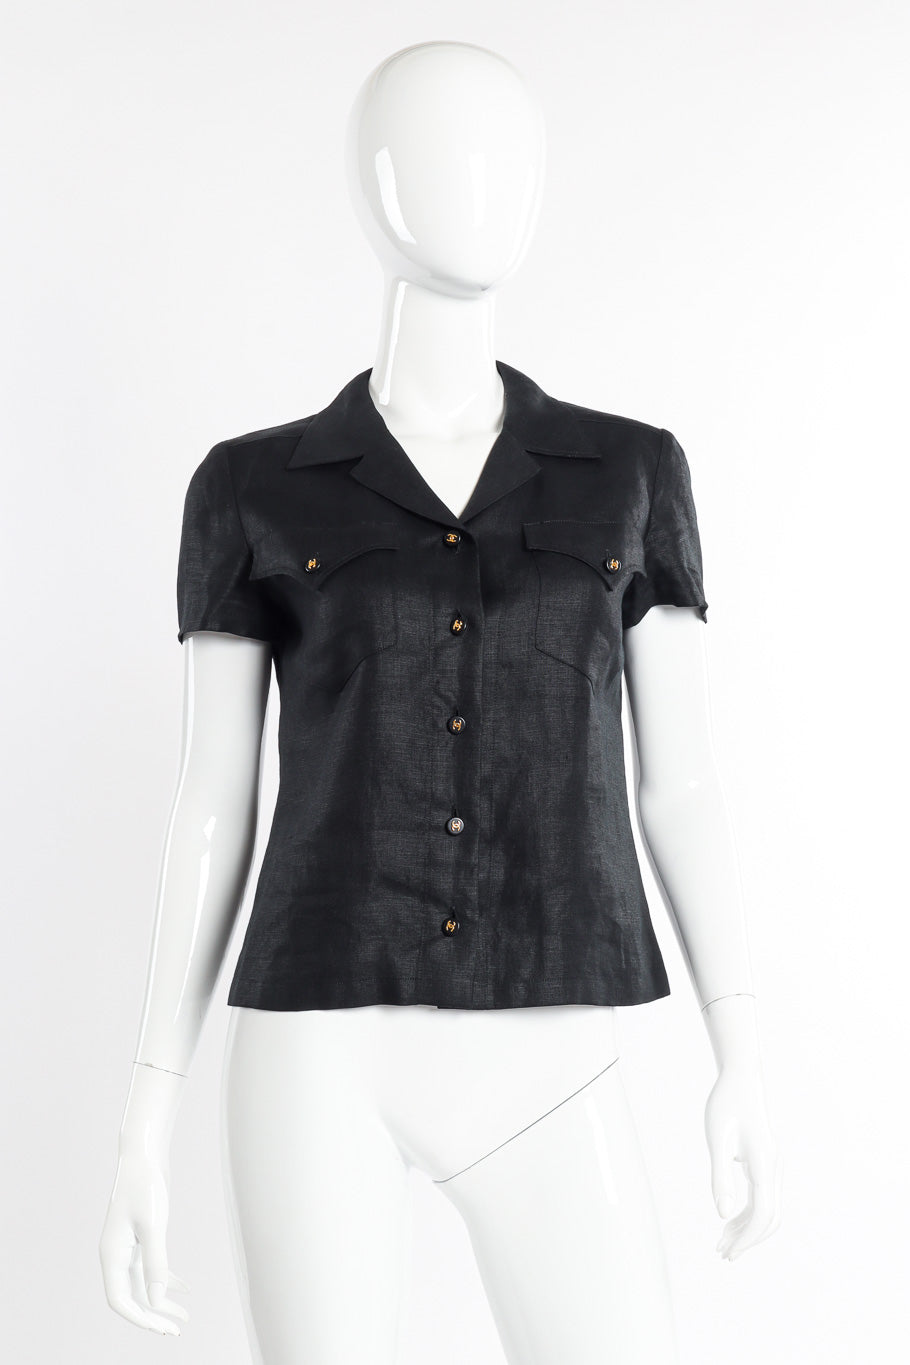 Vintage Chanel CC Button Linen Shirt front view on mannequin @recessla